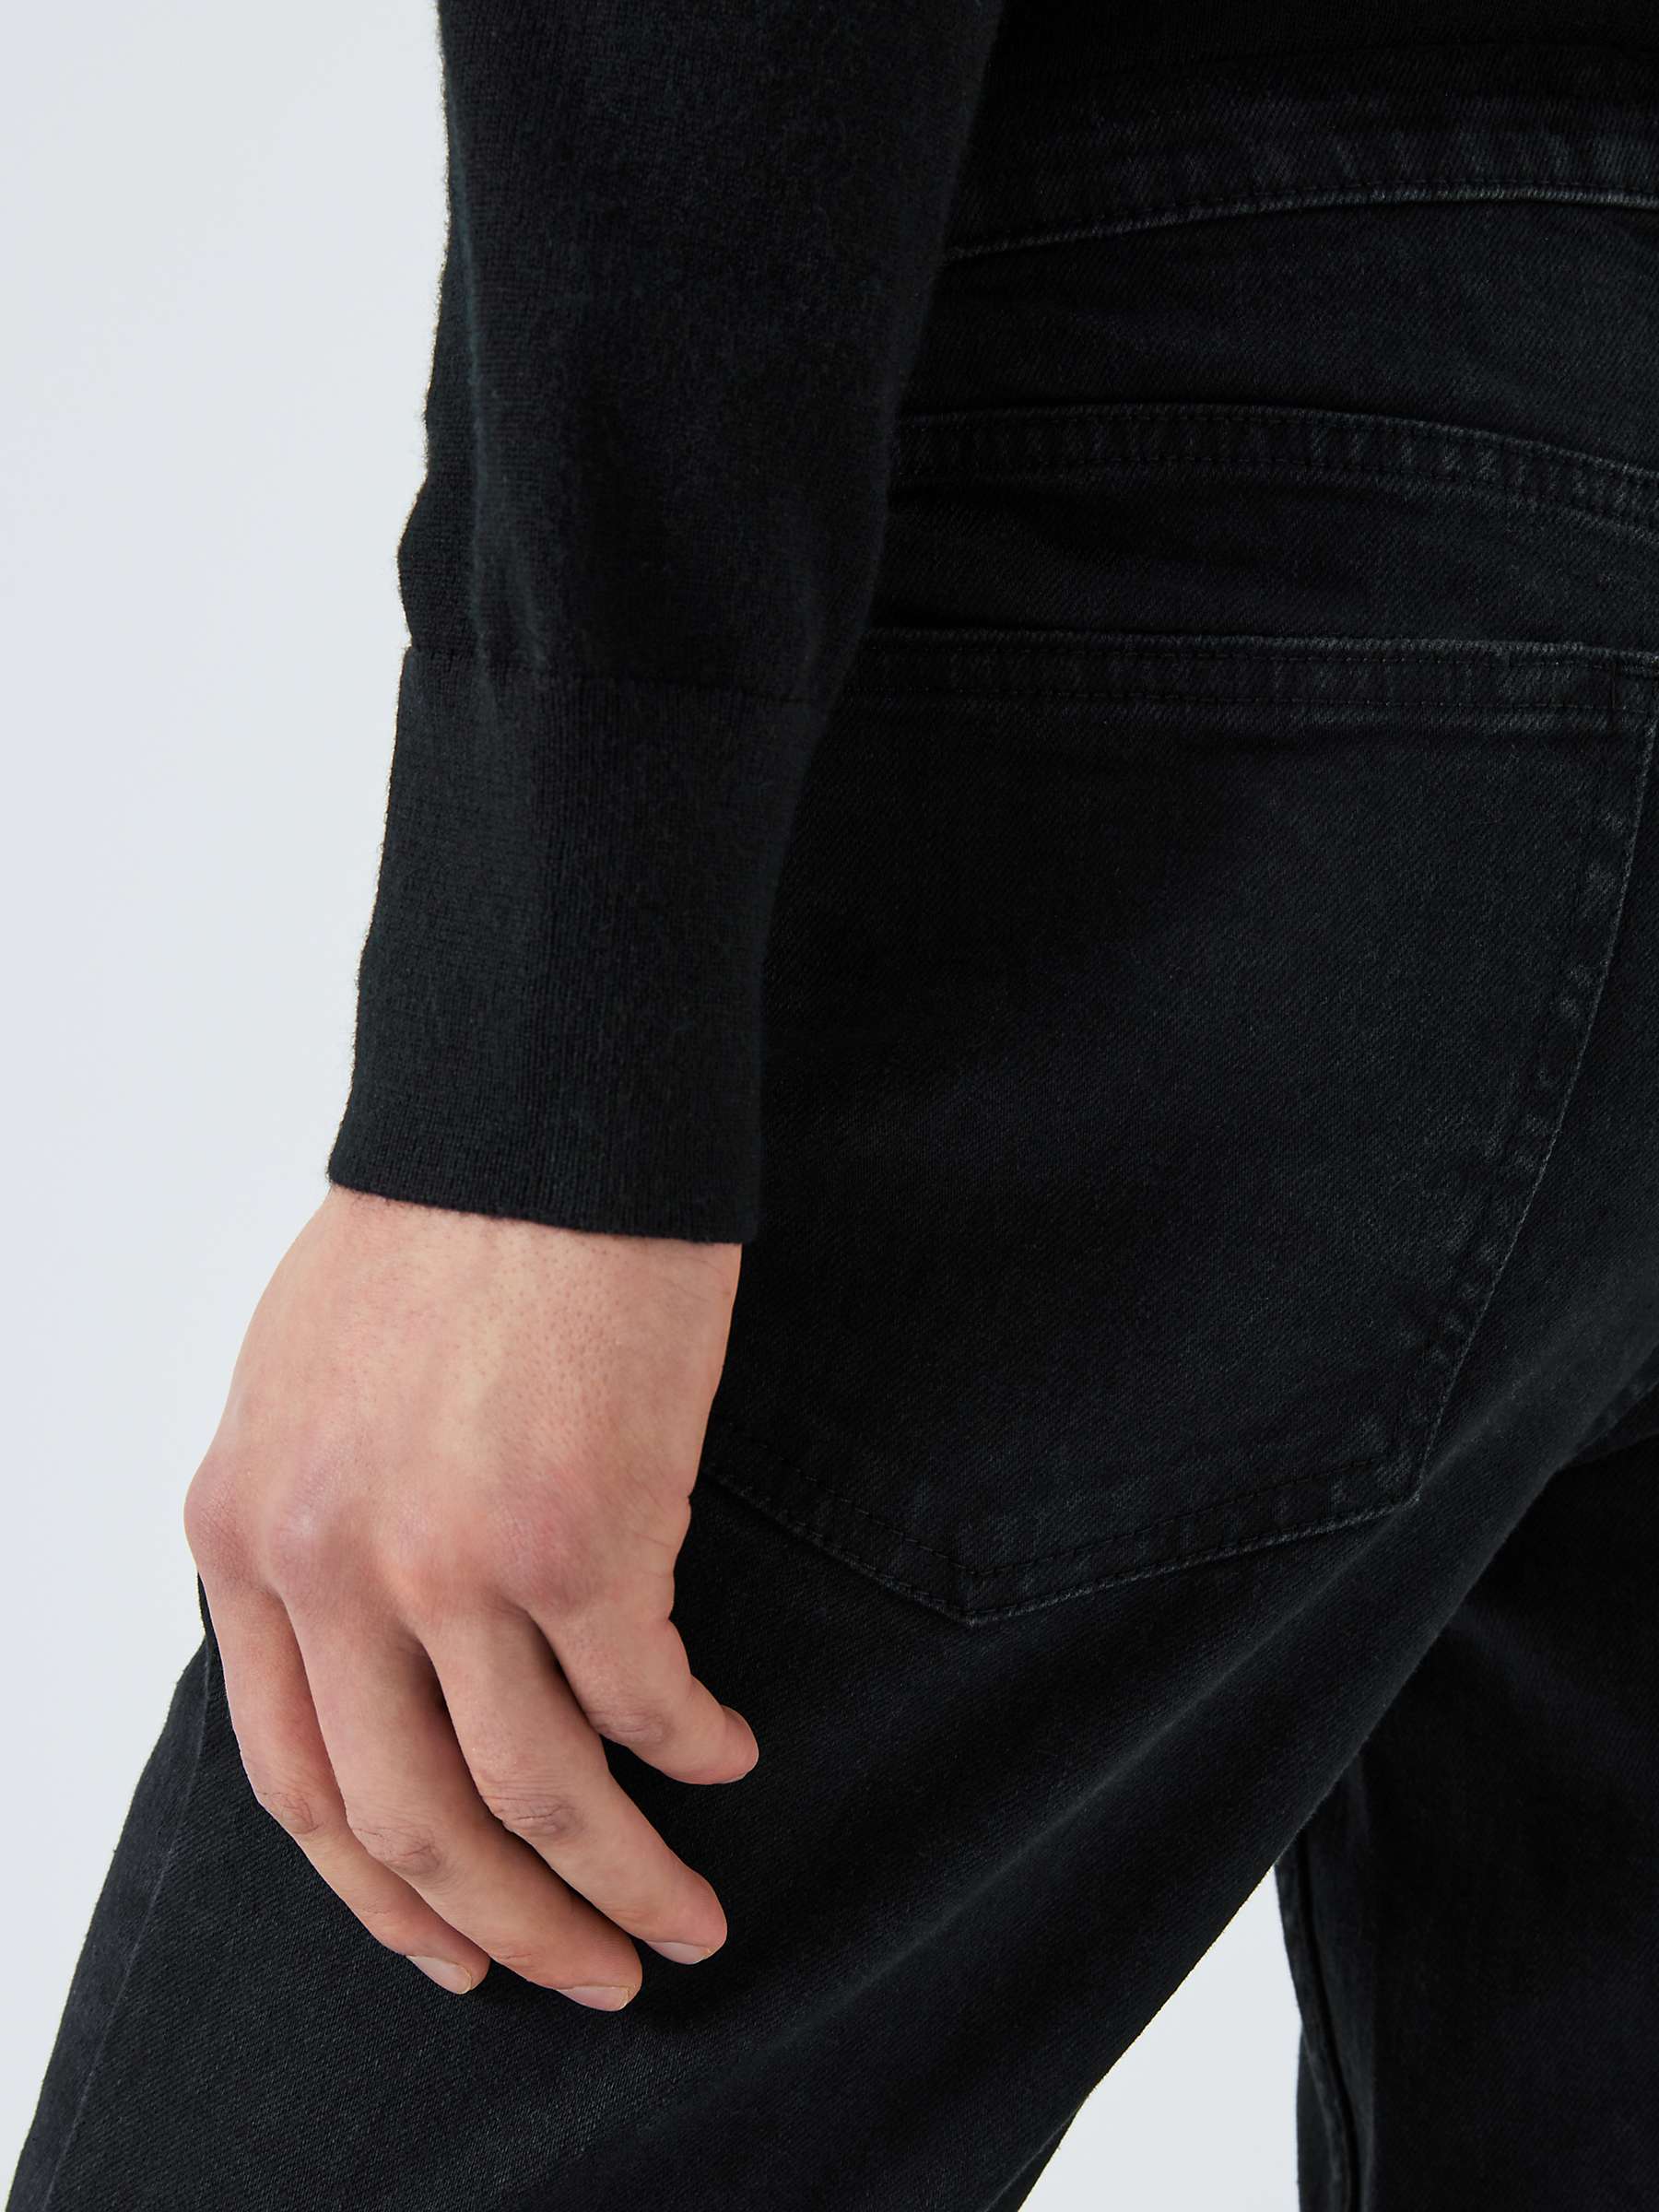 Buy Kin Slim Tapered Fit Denim Jeans, Black Online at johnlewis.com